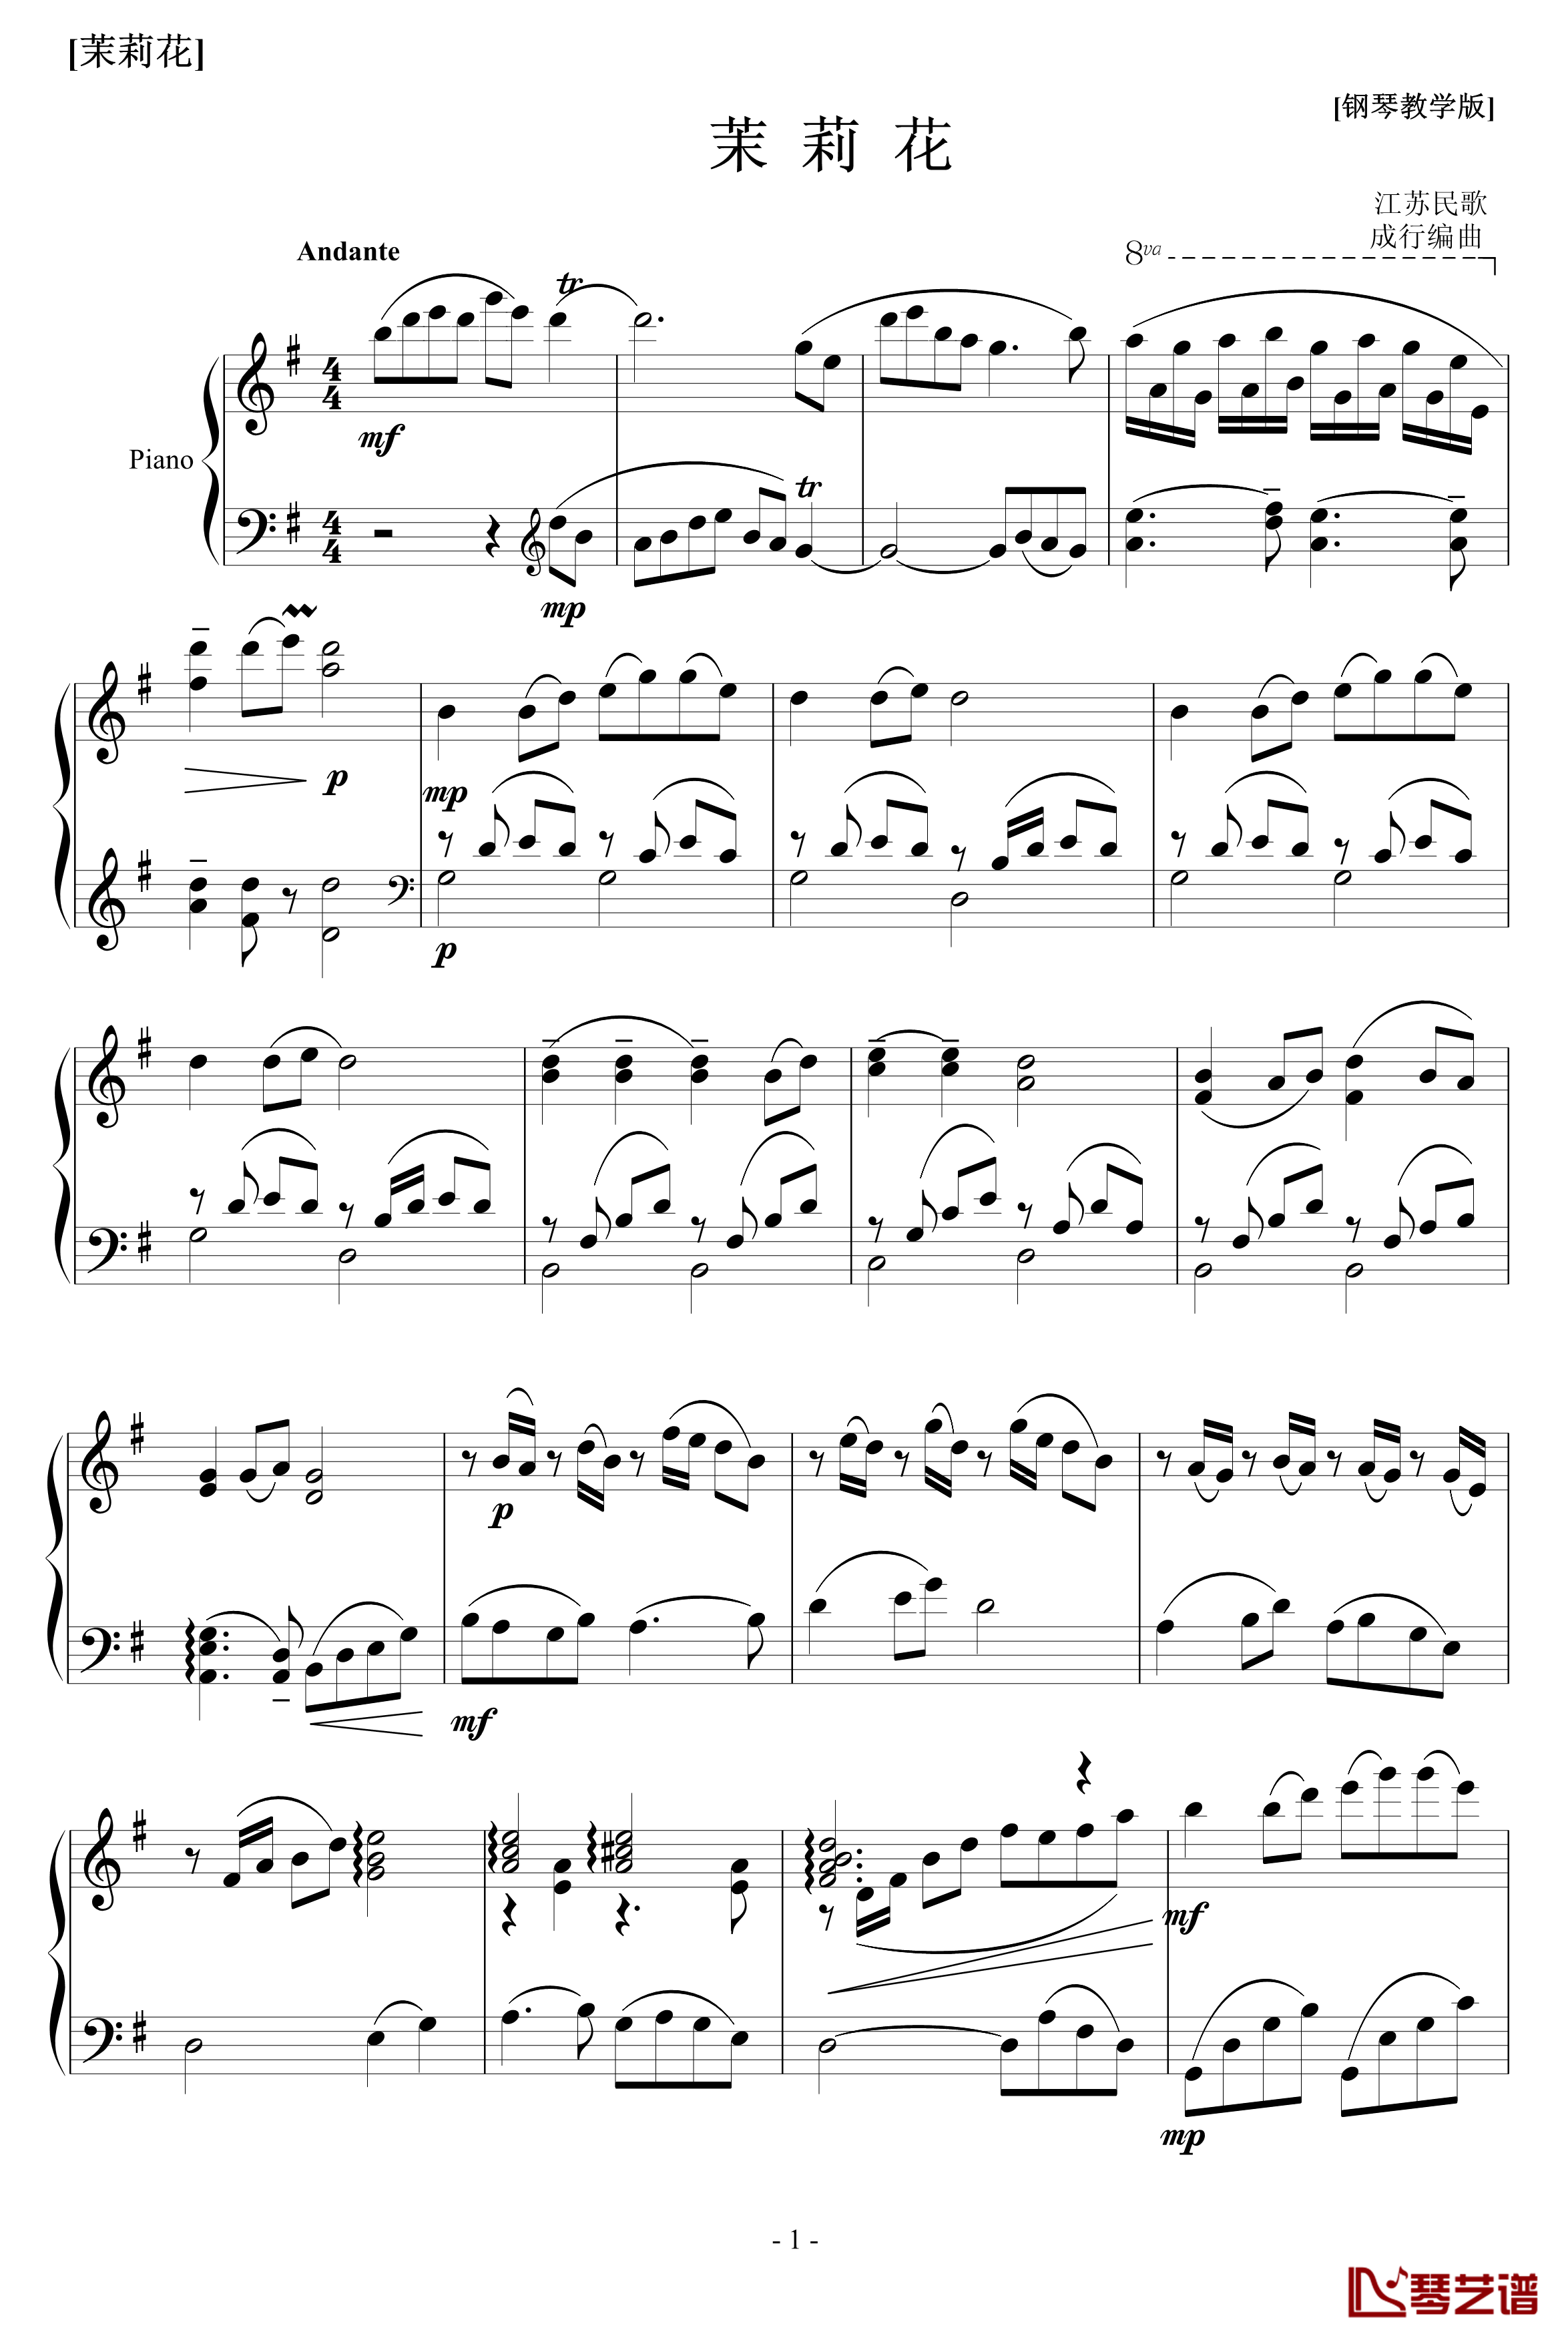 茉莉花钢琴谱-中国名曲1